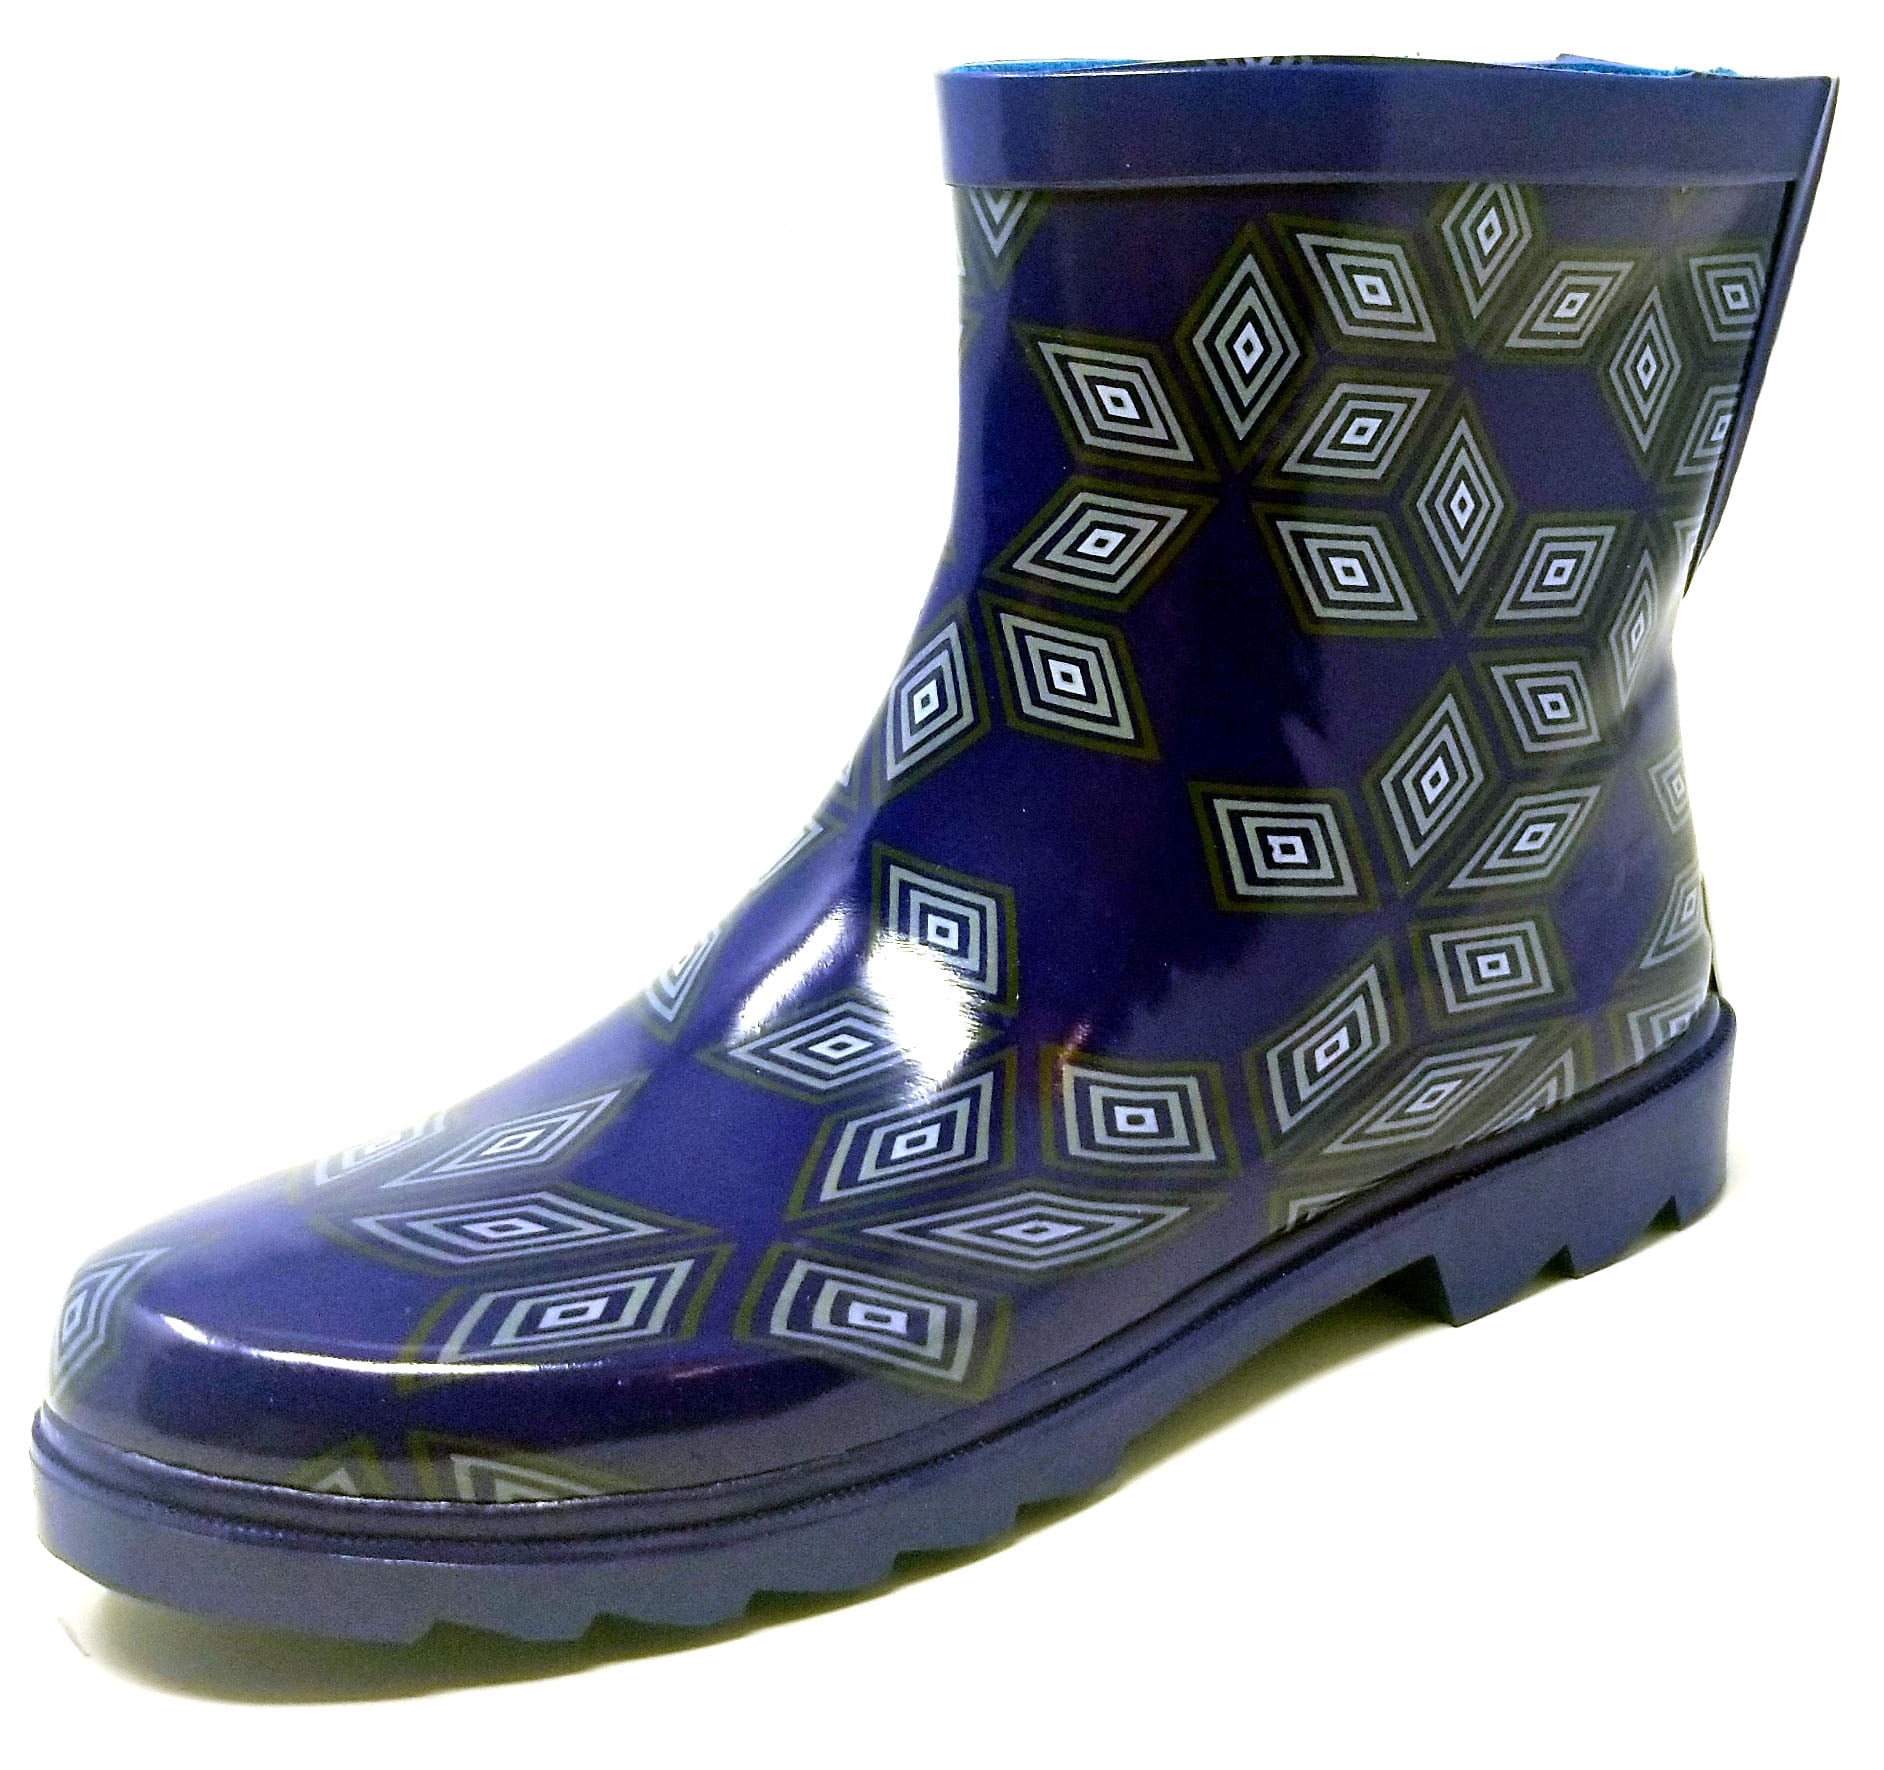 waterproof garden boots